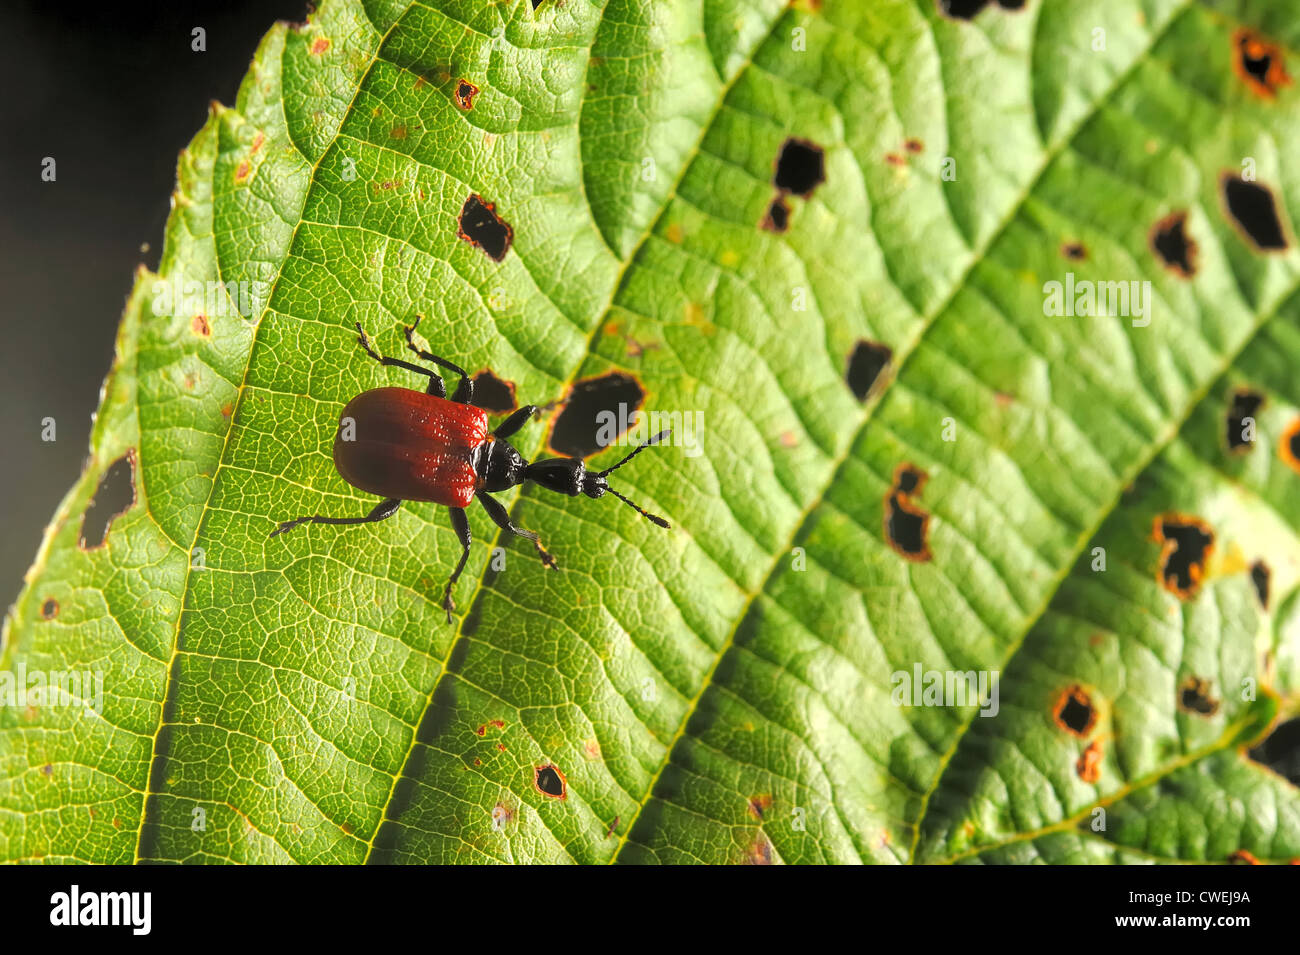 Hazel leaf-roller weevil (Apoderus coryli) on alder's leaf Stock Photo